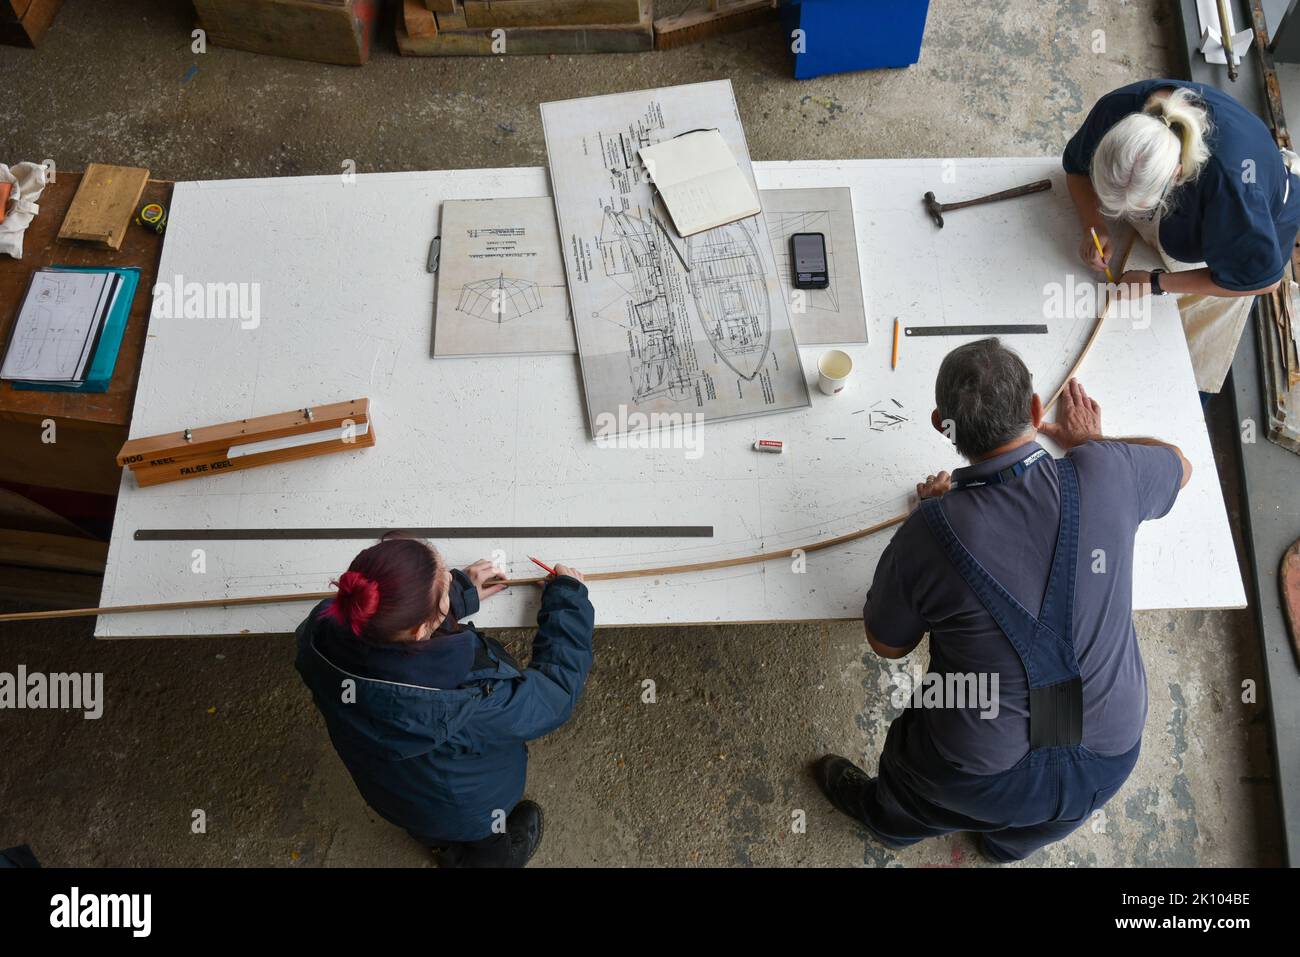 Schiffbau und Reparaturen im Boathouse Nummer 4, Portsmouth historische Schiffswerft. Mitarbeiter arbeiten an Plänen auf einem Holztisch. Stockfoto